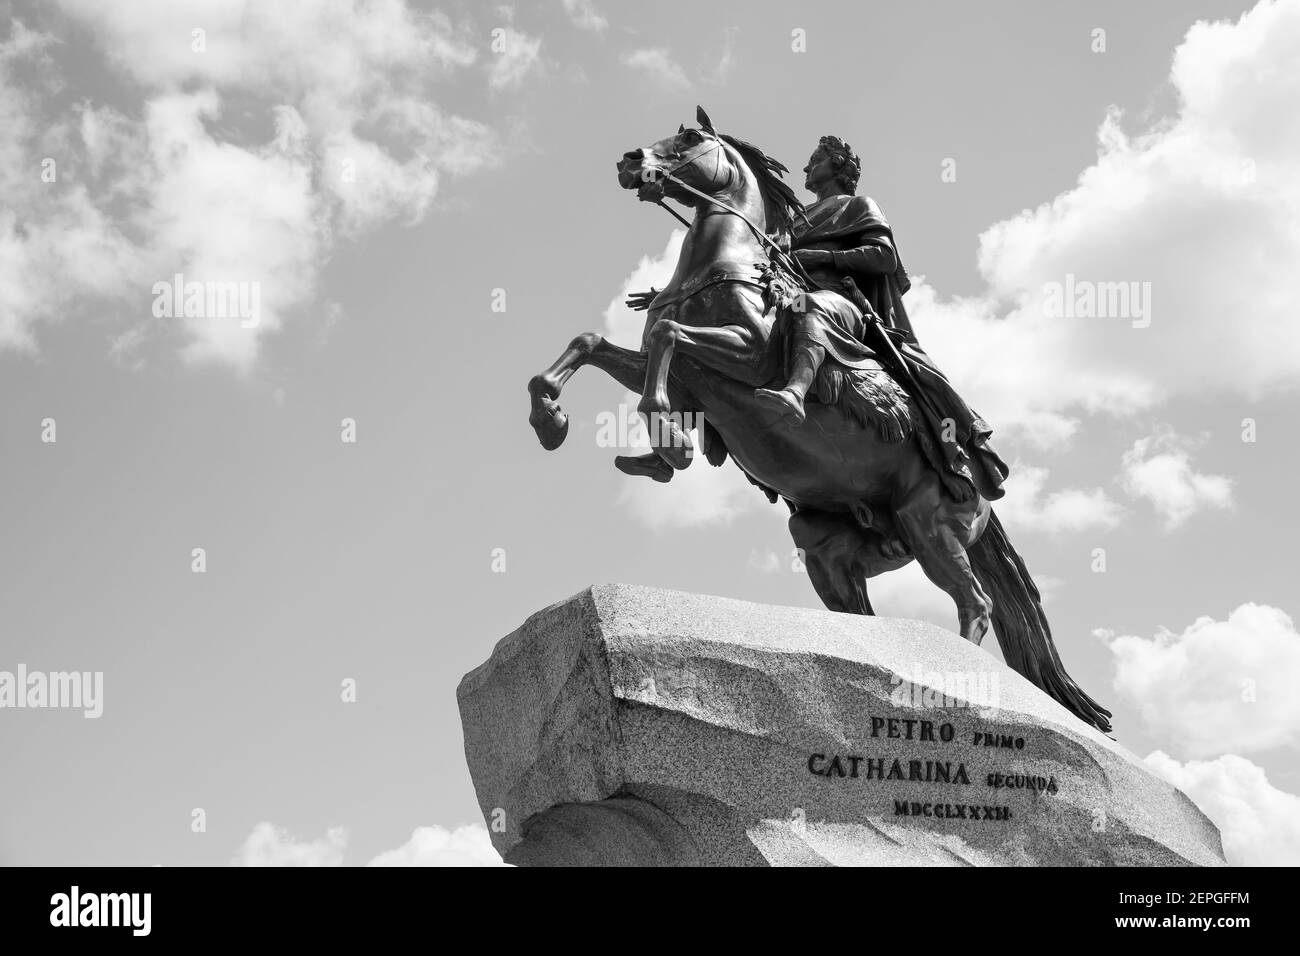 L'Horseman de bronze de Falconet (1782) - statue équestre de Pierre le Grand sur la place du Sénat à Saint-Pétersbourg, Russie. Photog noir et blanc Banque D'Images